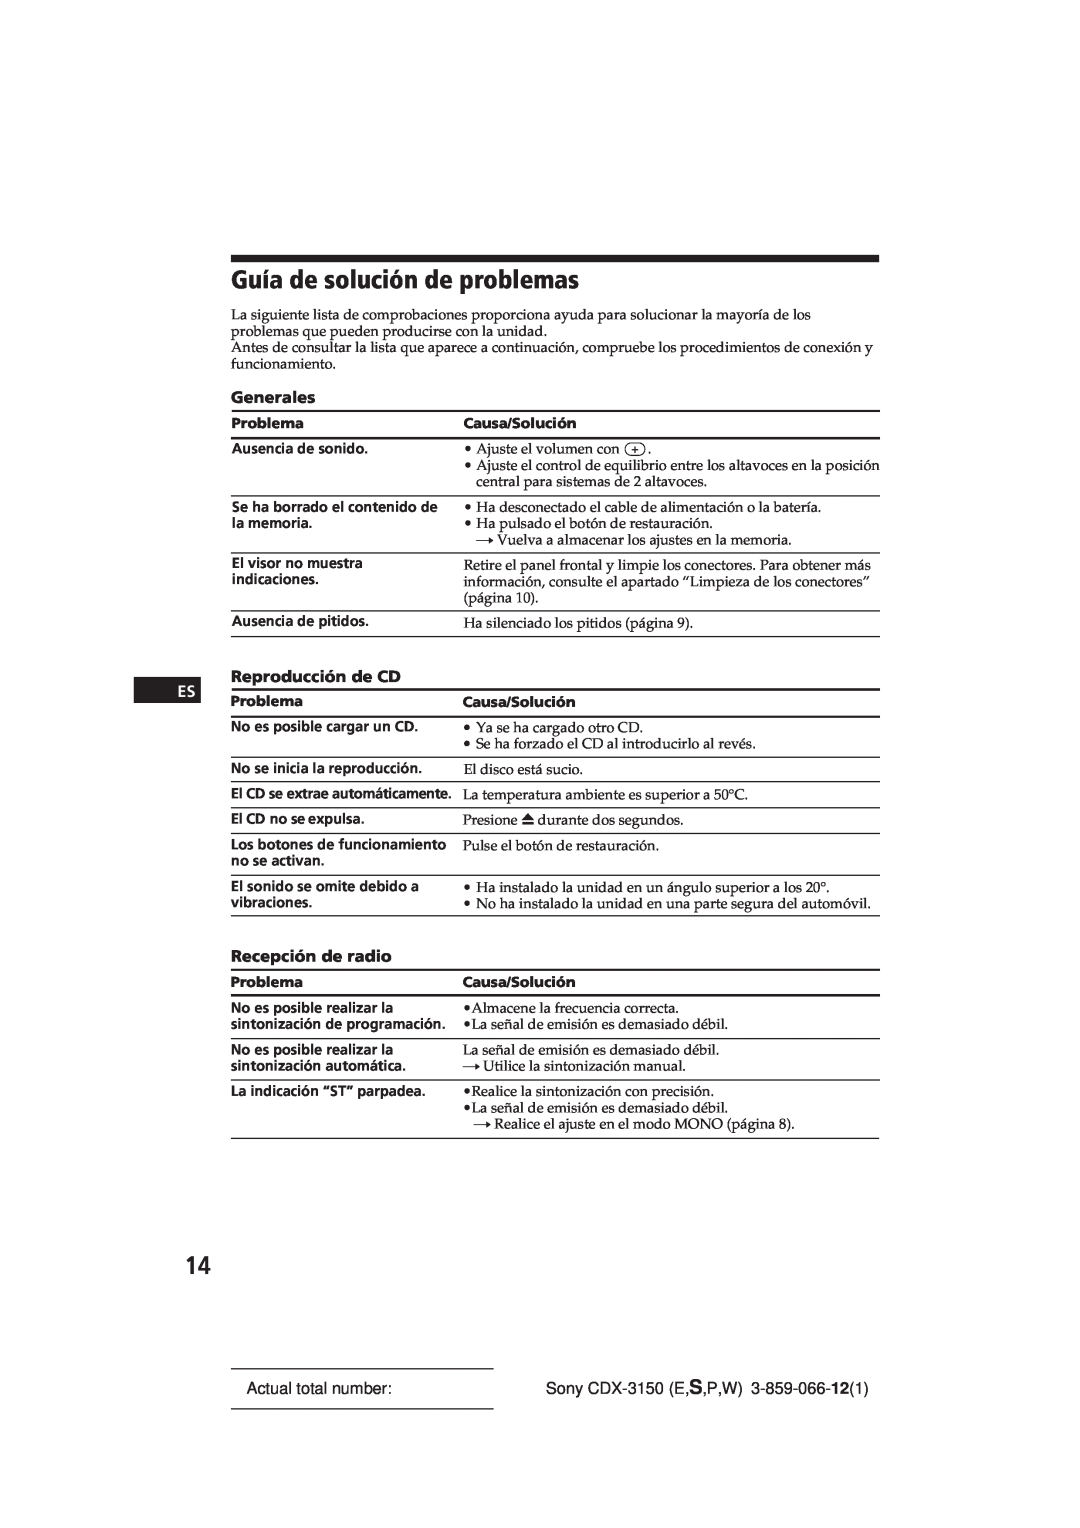 Sony CDX-3150 manual Guía de solución de problemas, Reproducción de CD, Recepción de radio, Generales, Actual total number 